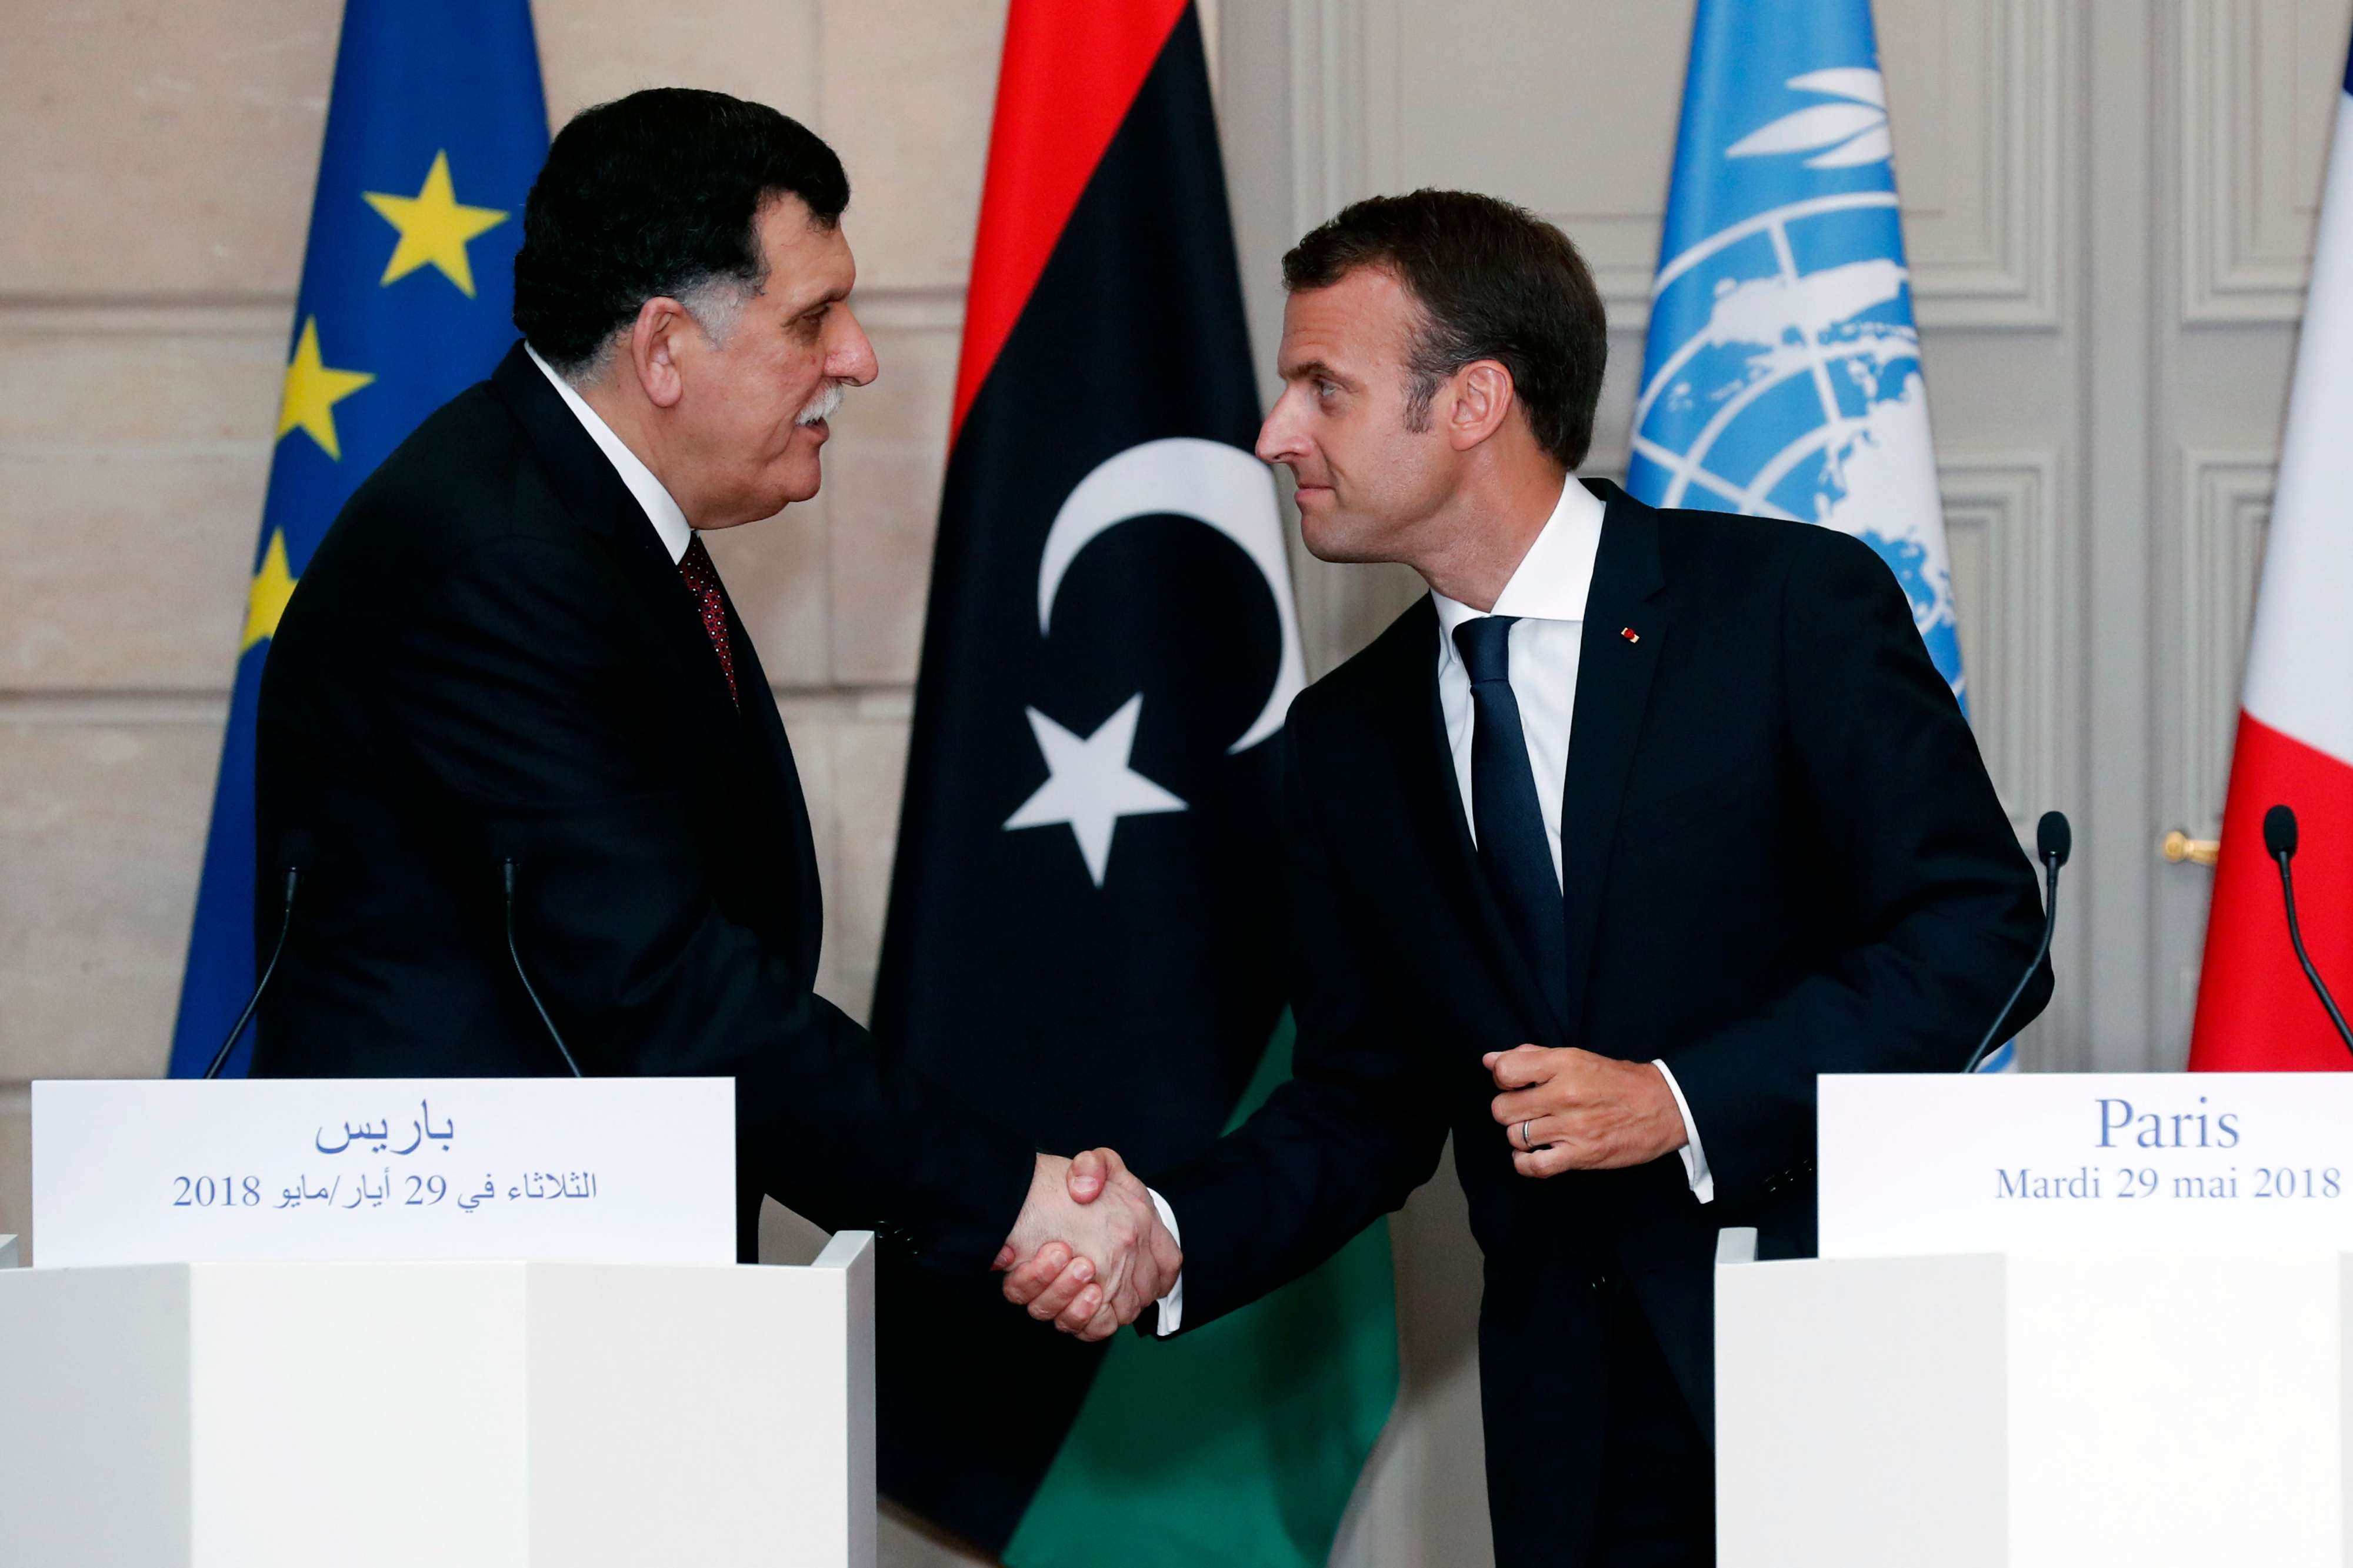 فرنسا دفعت بشدة لاجراء انتخابات عامة في ليبيا في نهاية 2018